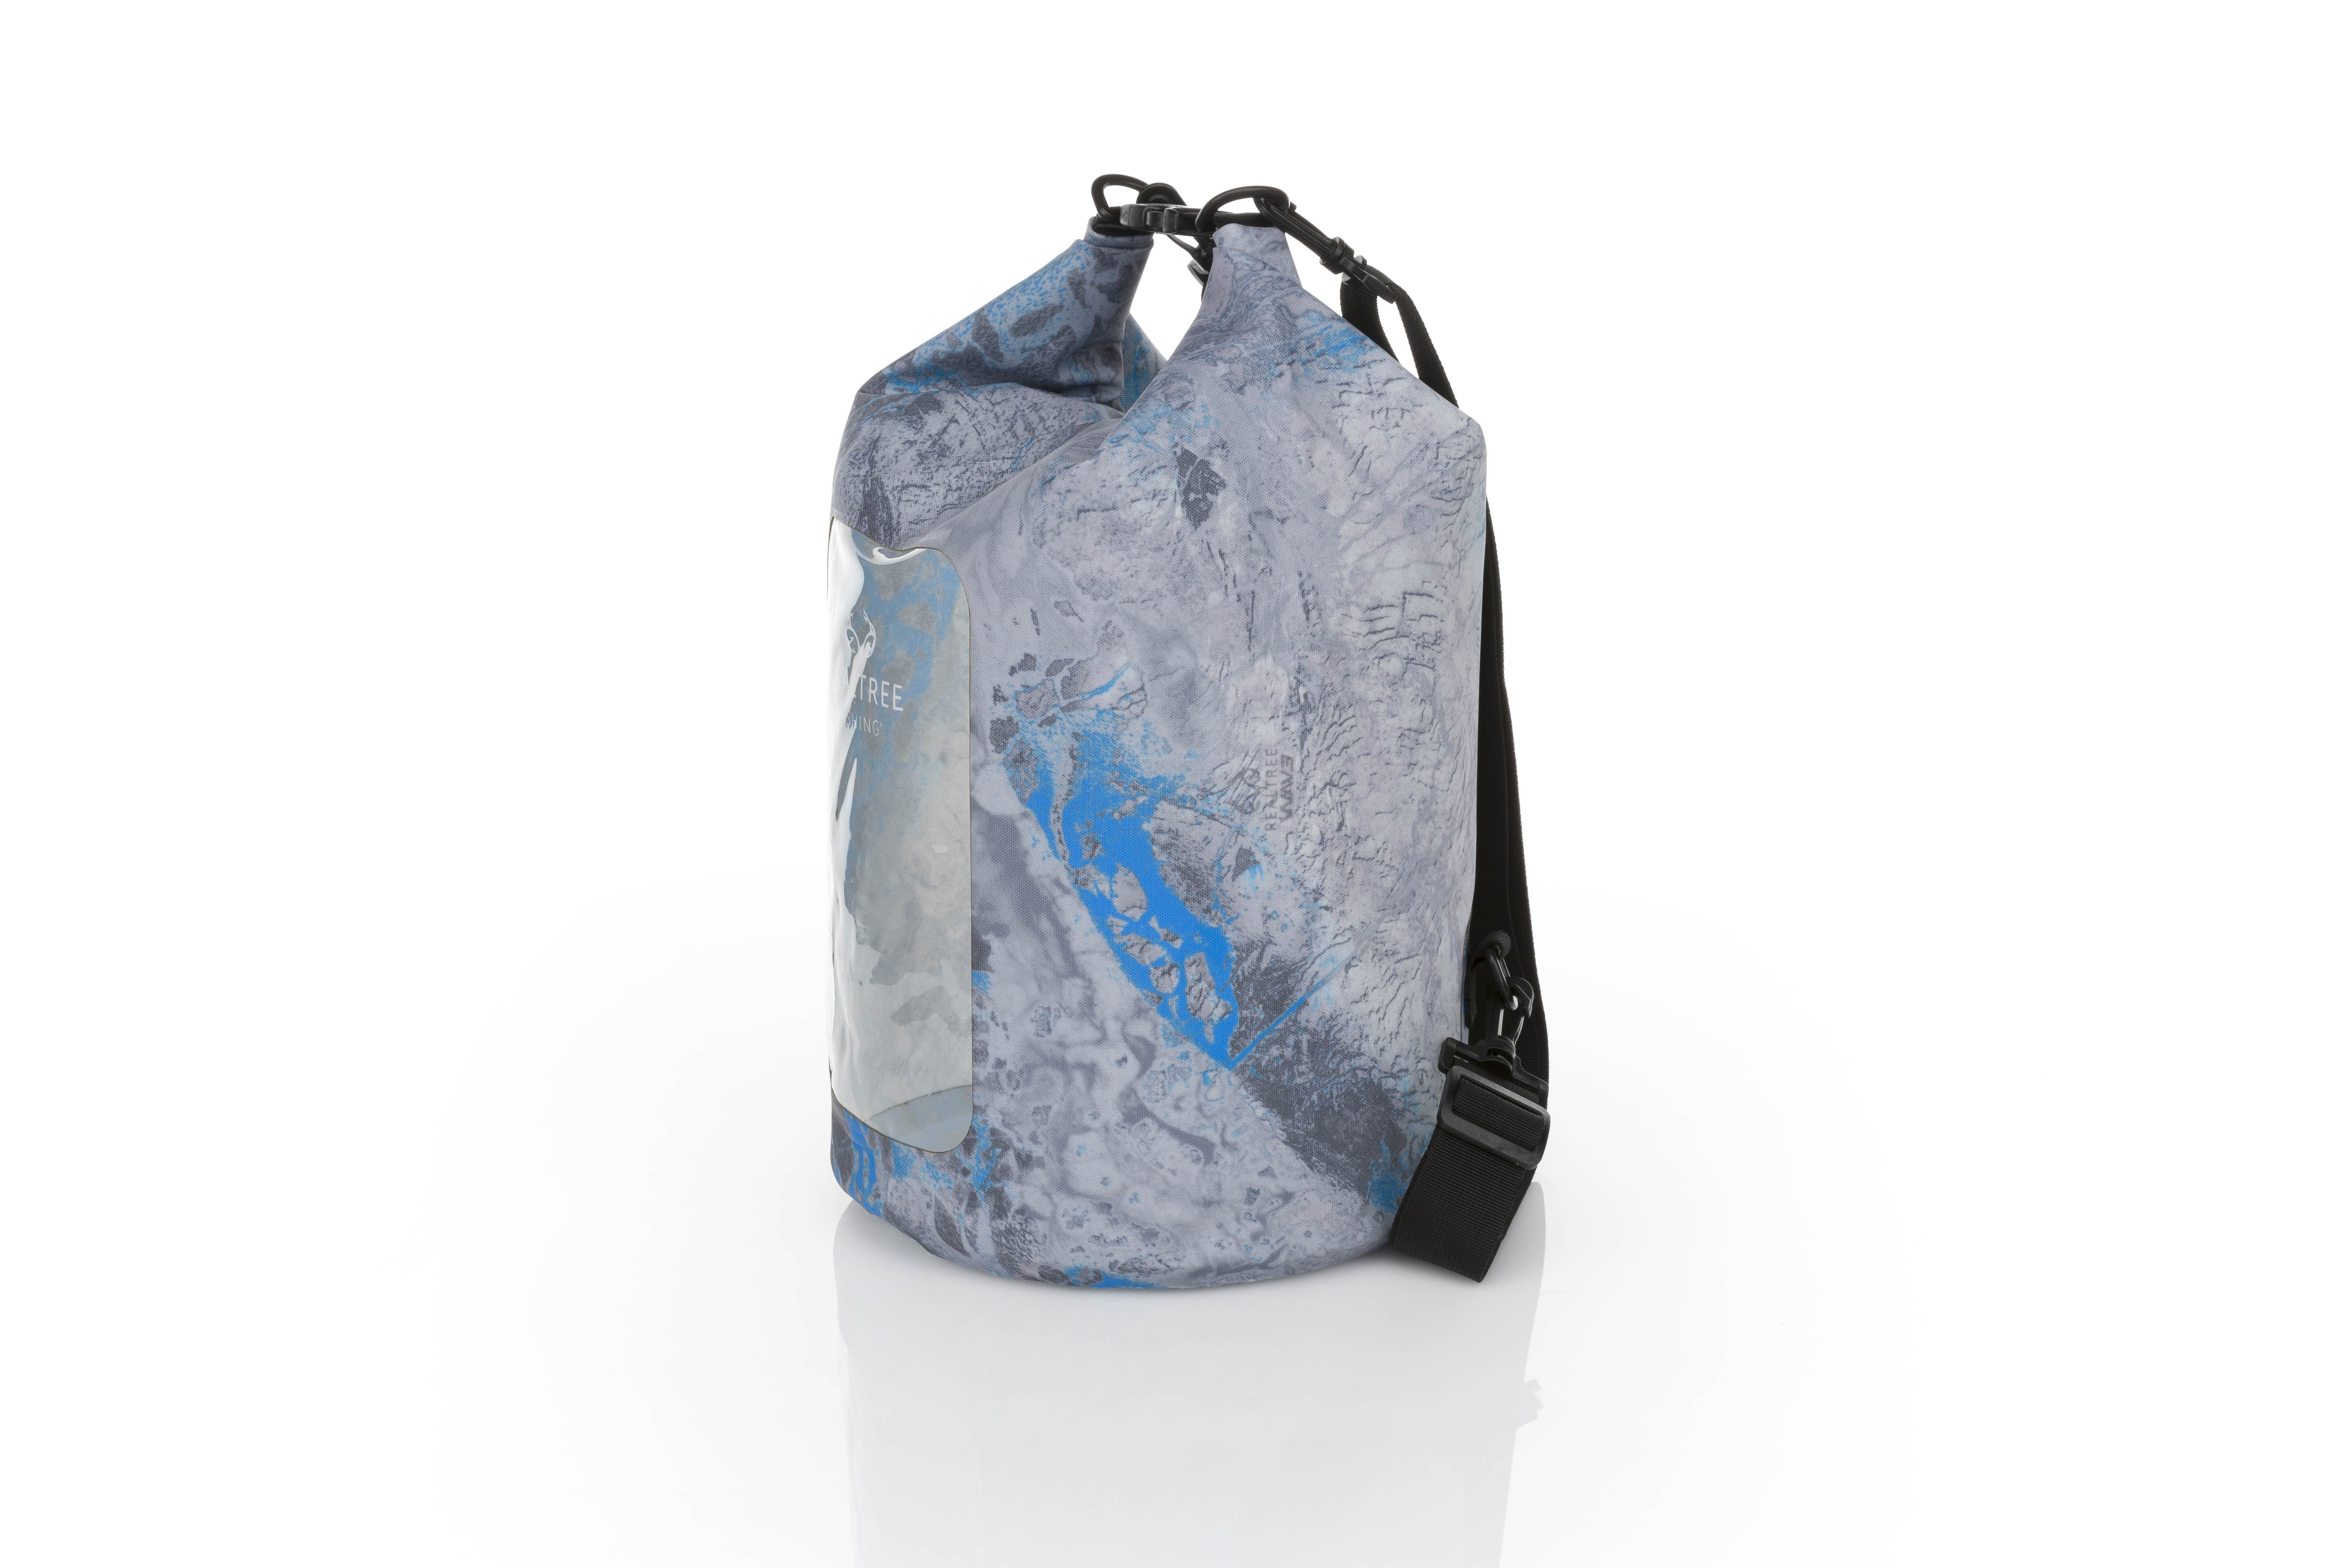 Real Purpose Apparel Waterproof Travel Bag – realpurposeapparel